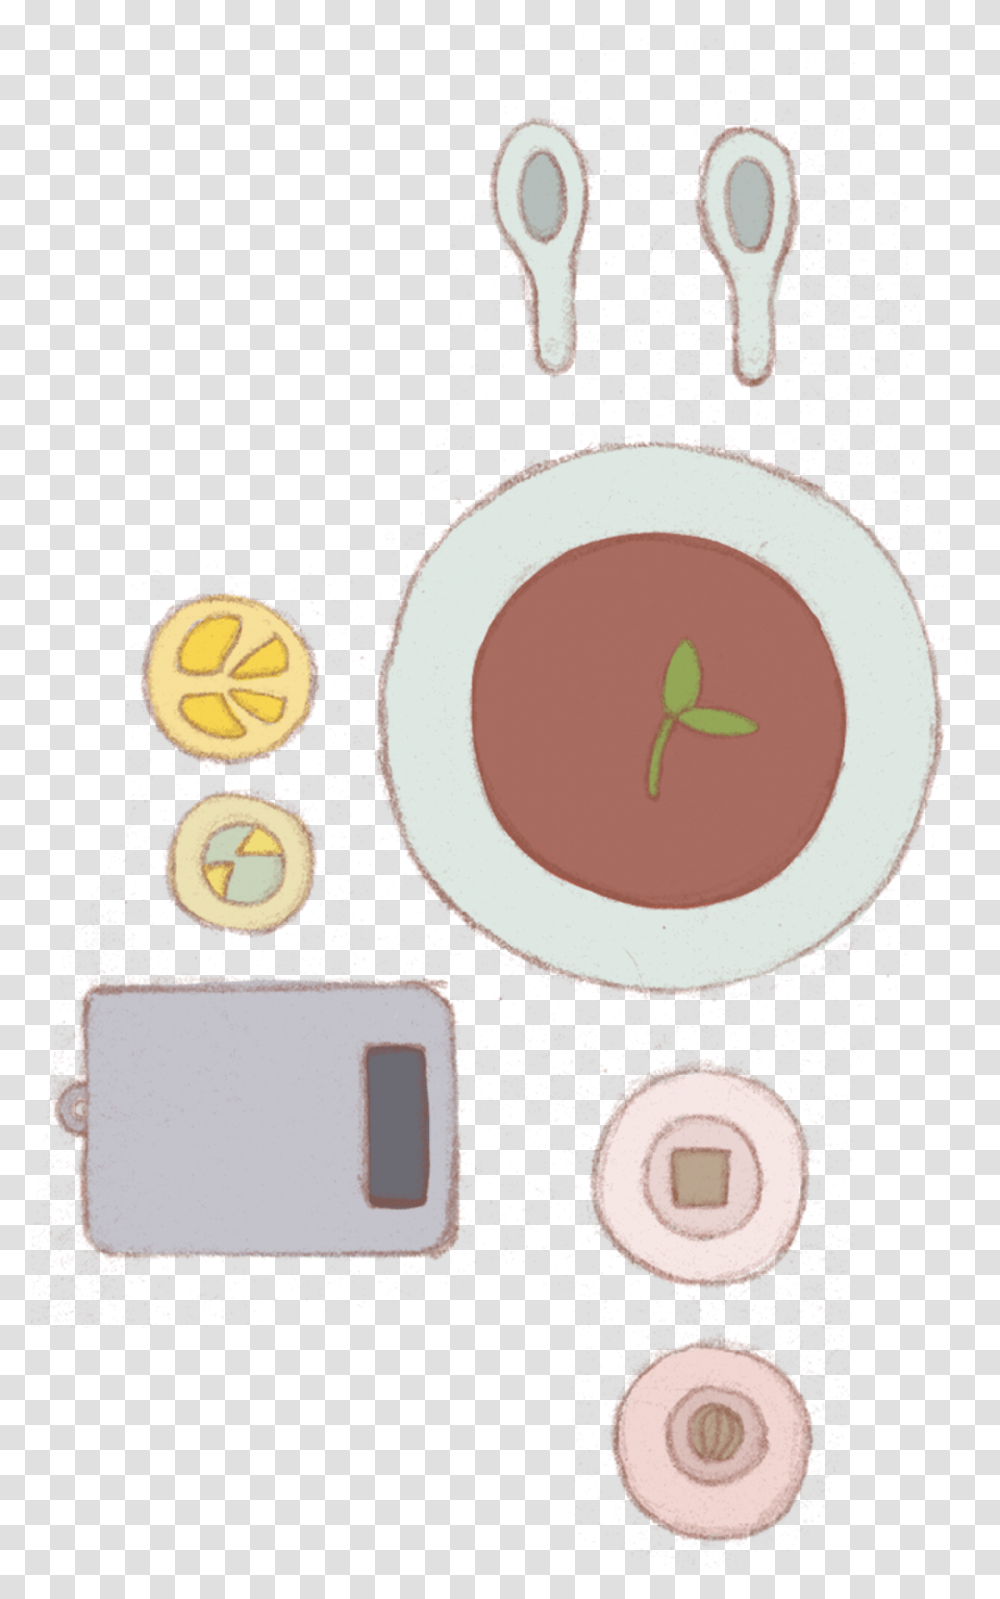 Plate Of Food Circle, Dish, Meal, Electronics, Bird Transparent Png